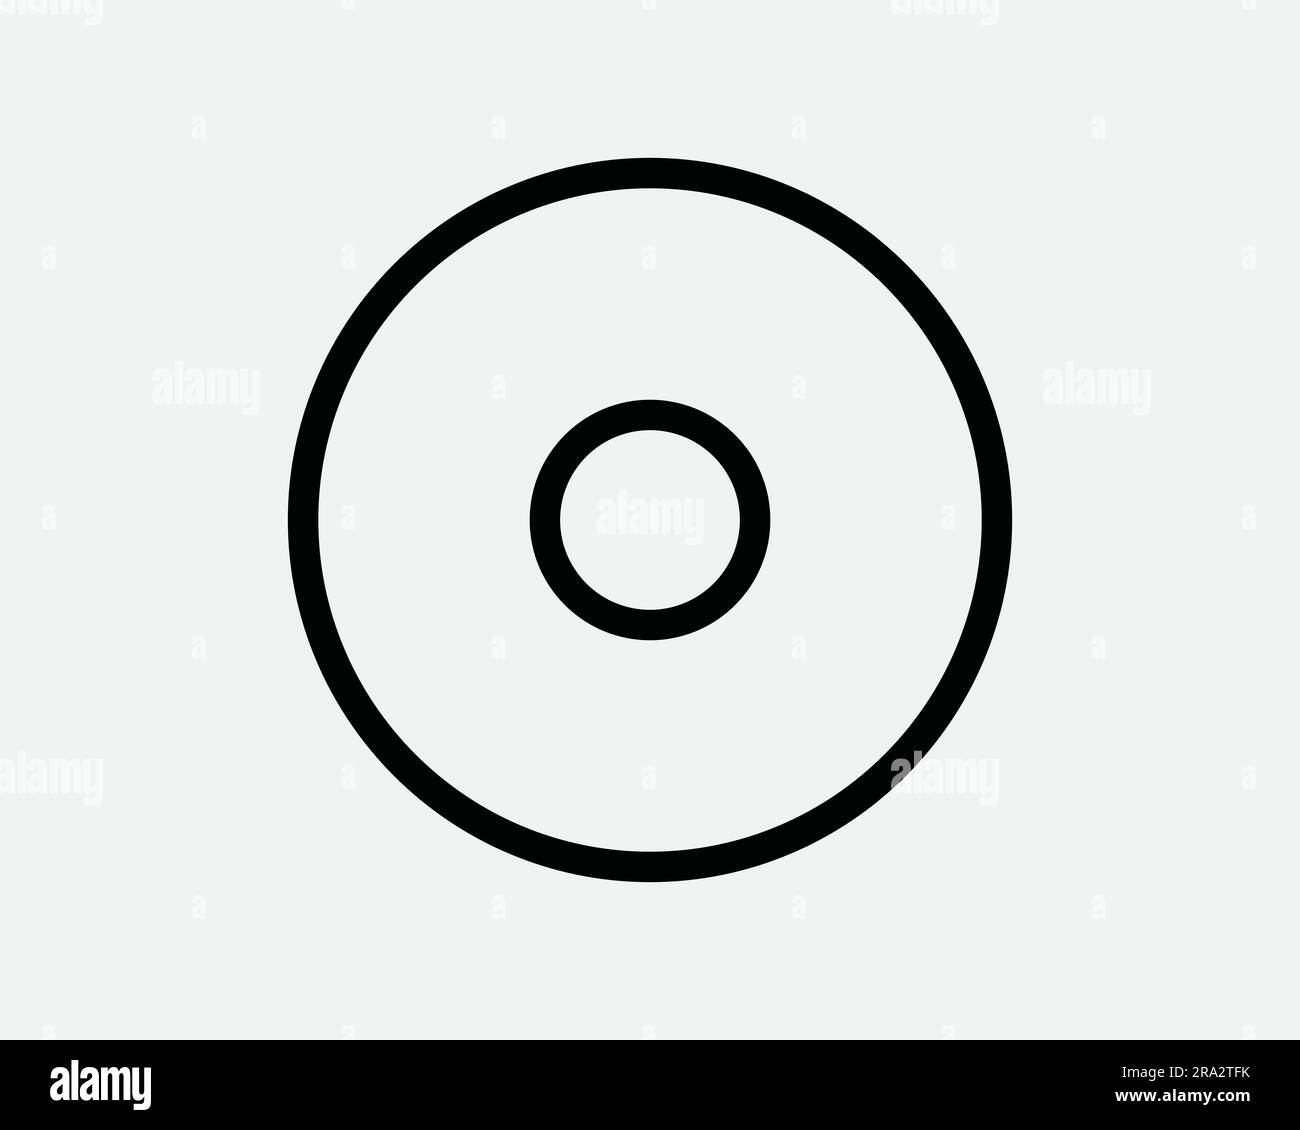 CD-Zeilensymbol. DVD-Musik Filmaufnahme Medienspeicher alte runde, kreisförmige CD mit Retro-Ring-Design. Schwarzer Grafikausschnitt Artwork Symbol-Zeichenvektor-EPS Stock Vektor